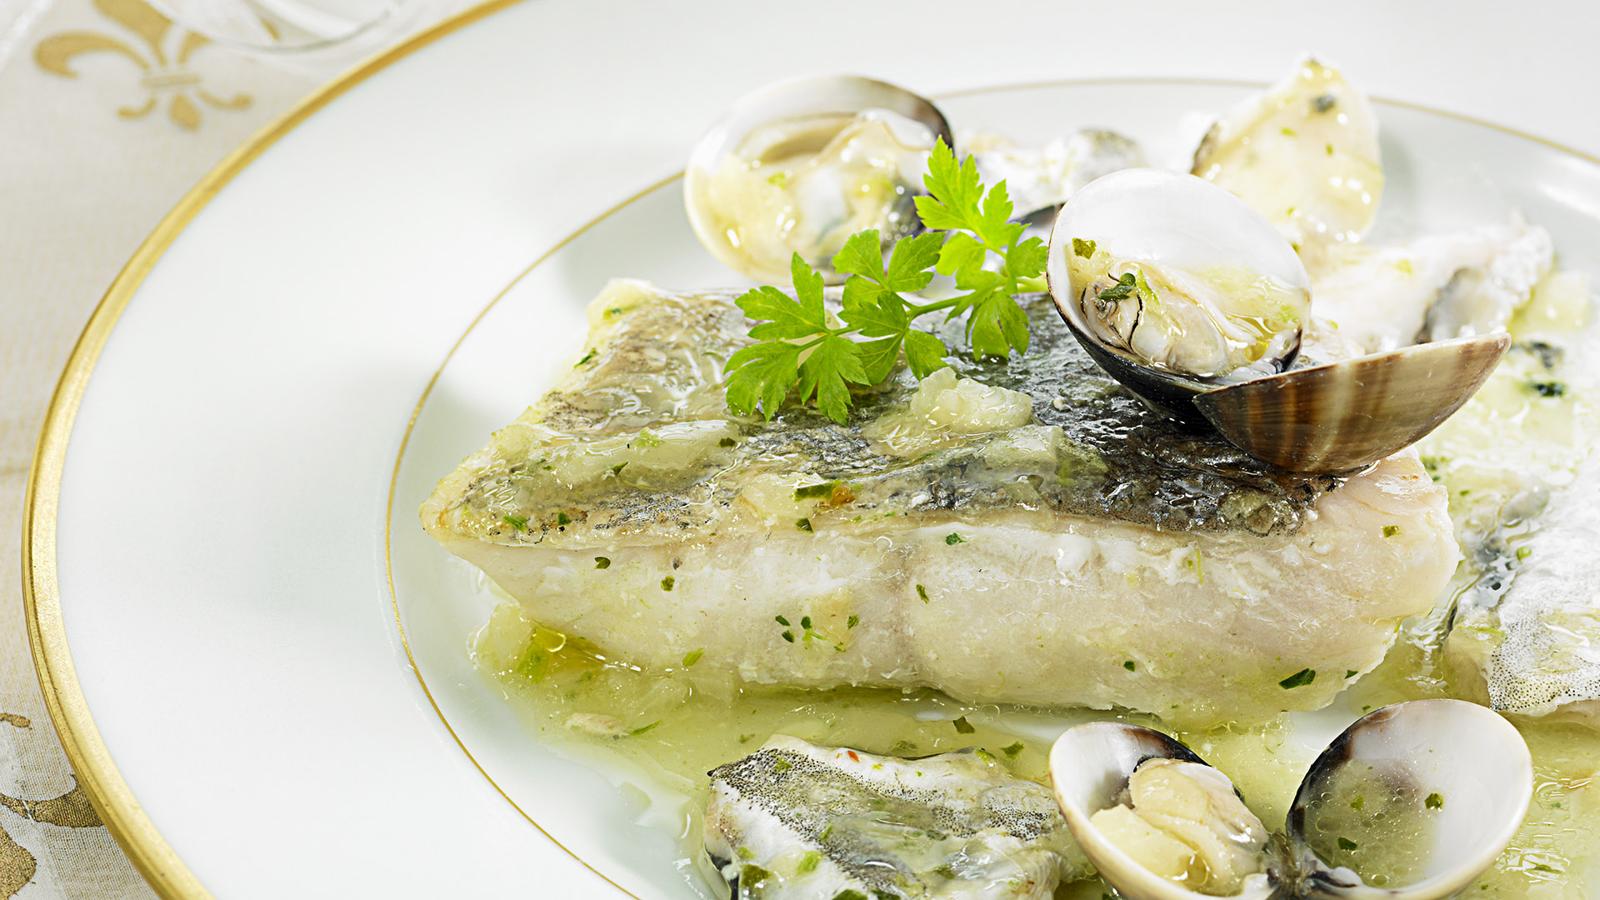 Merluza. La merluza es otro de los pescados que contiene cistina. Según informa la dermatóloga Diana Velázquez, este alimento puede contribuir a ese aporte de cistina.